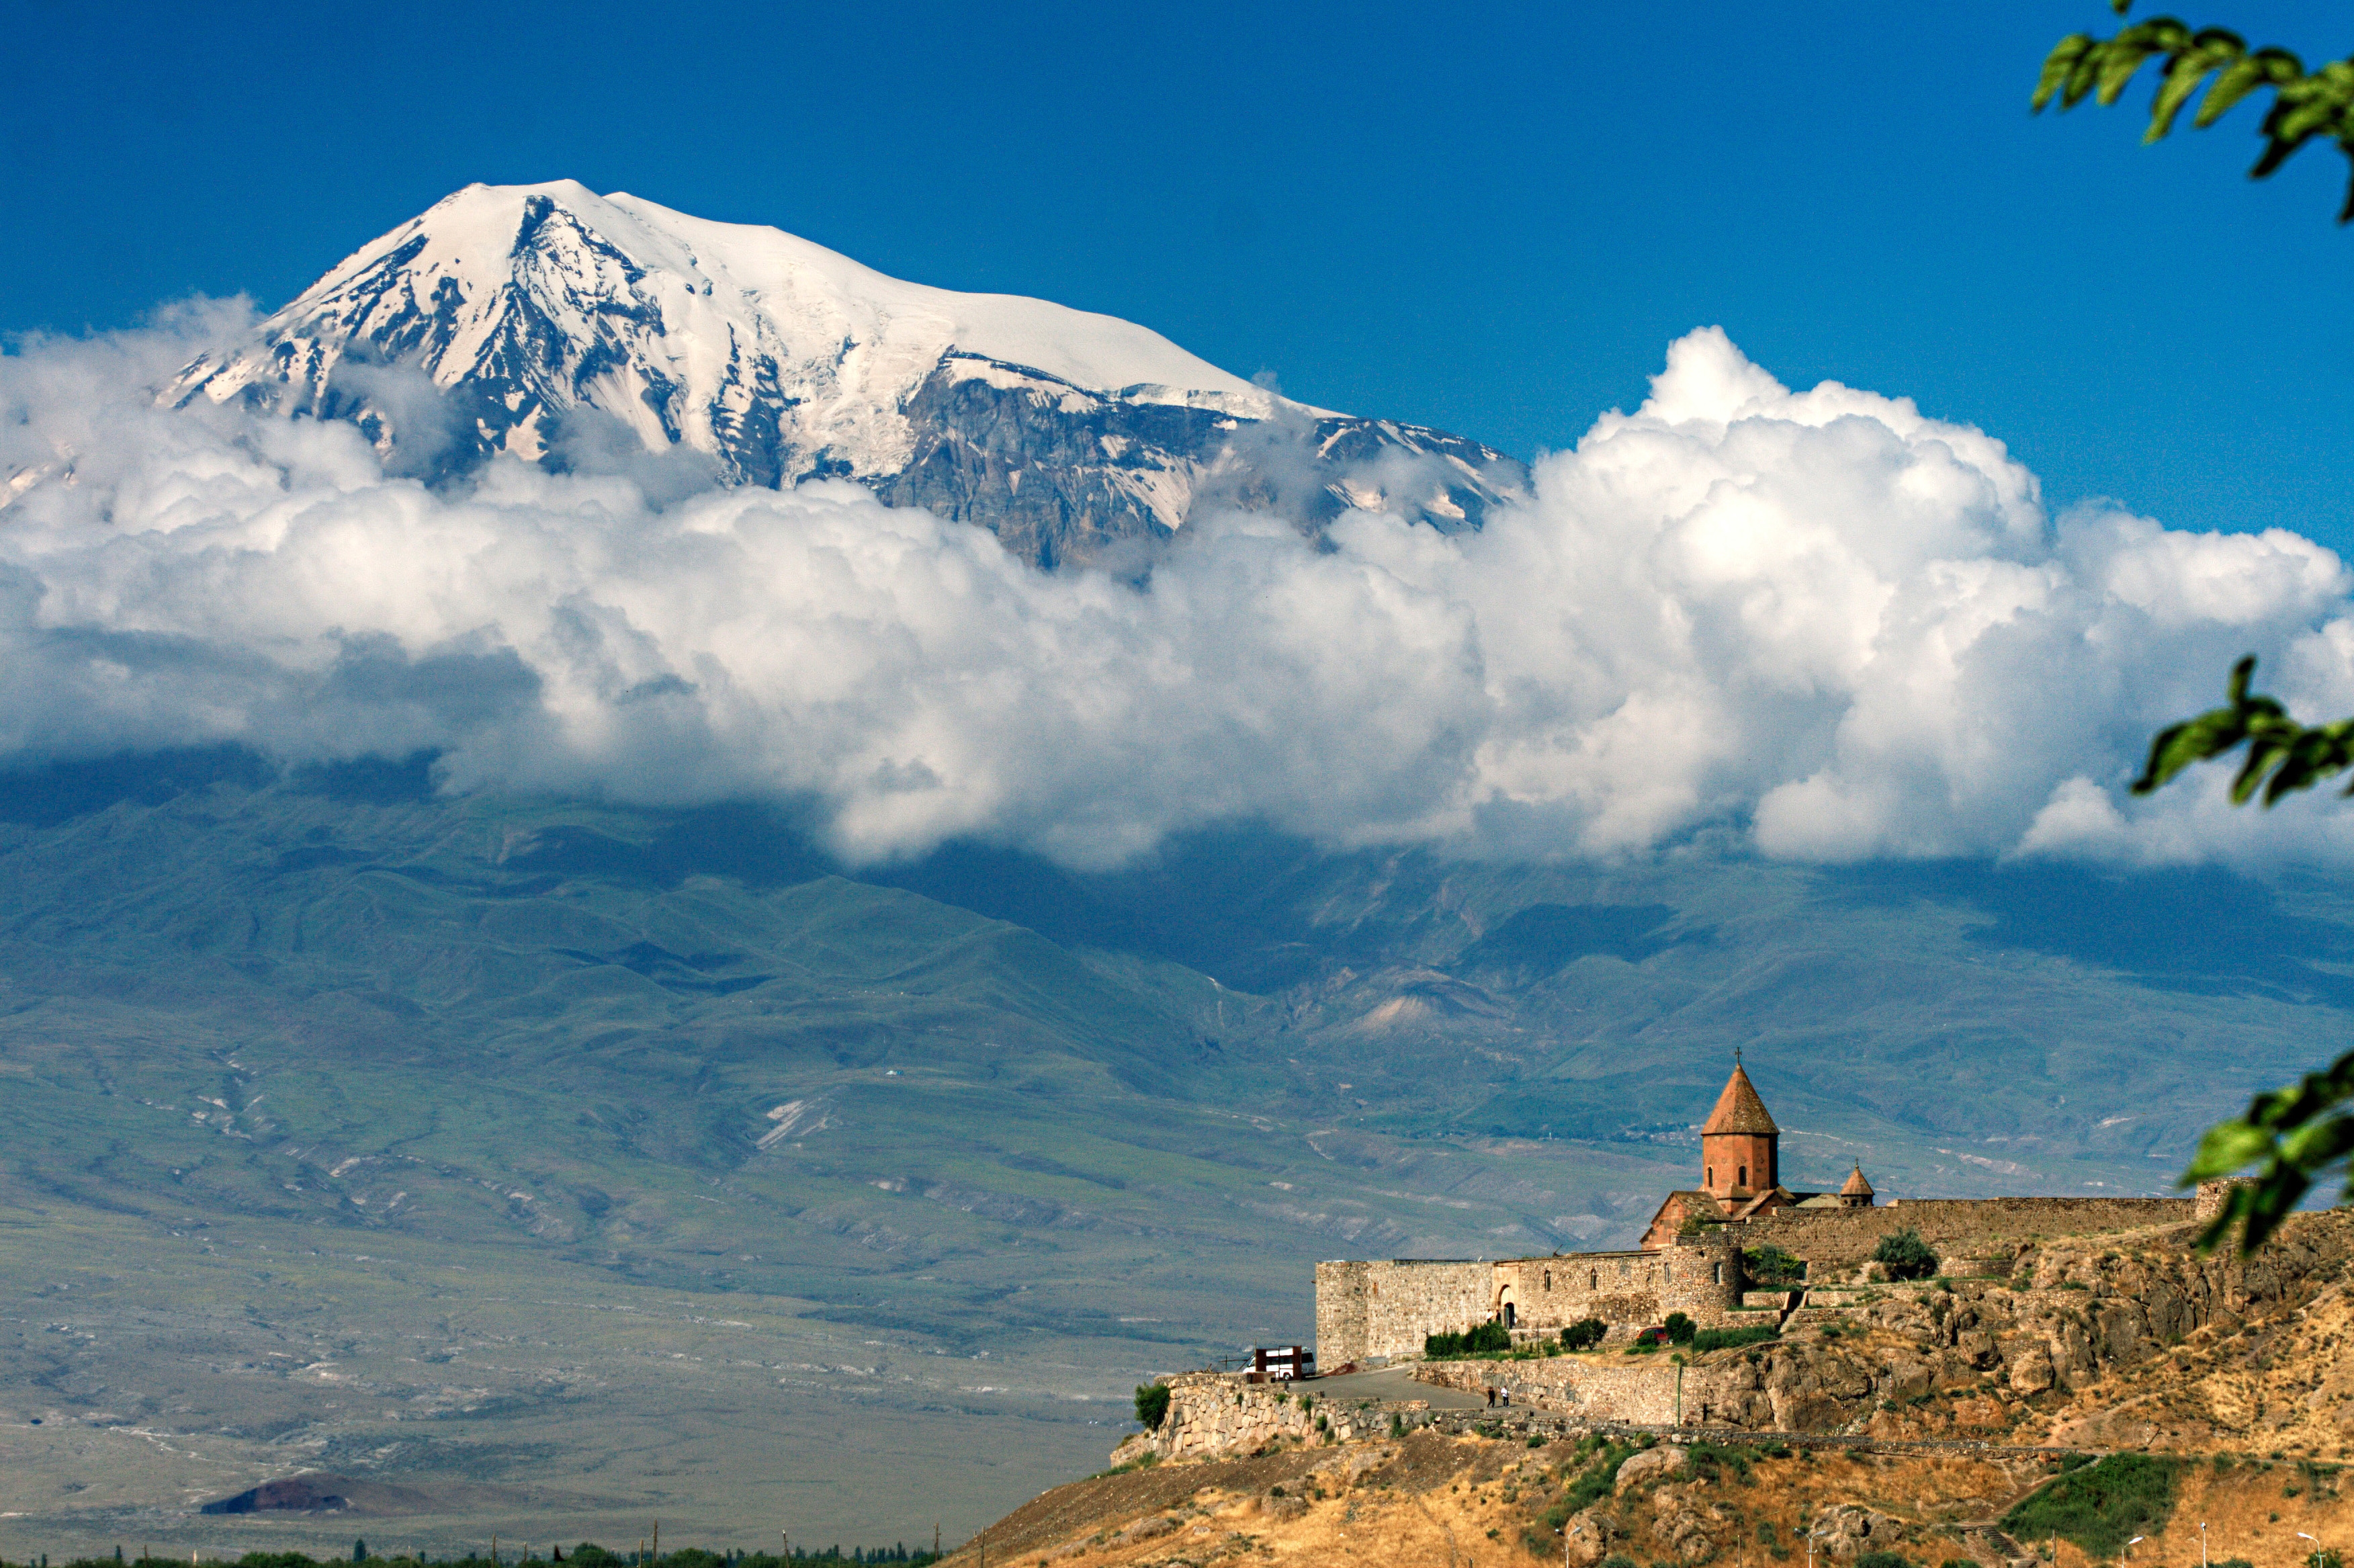 Популярные заставки и фоны Армения на компьютер